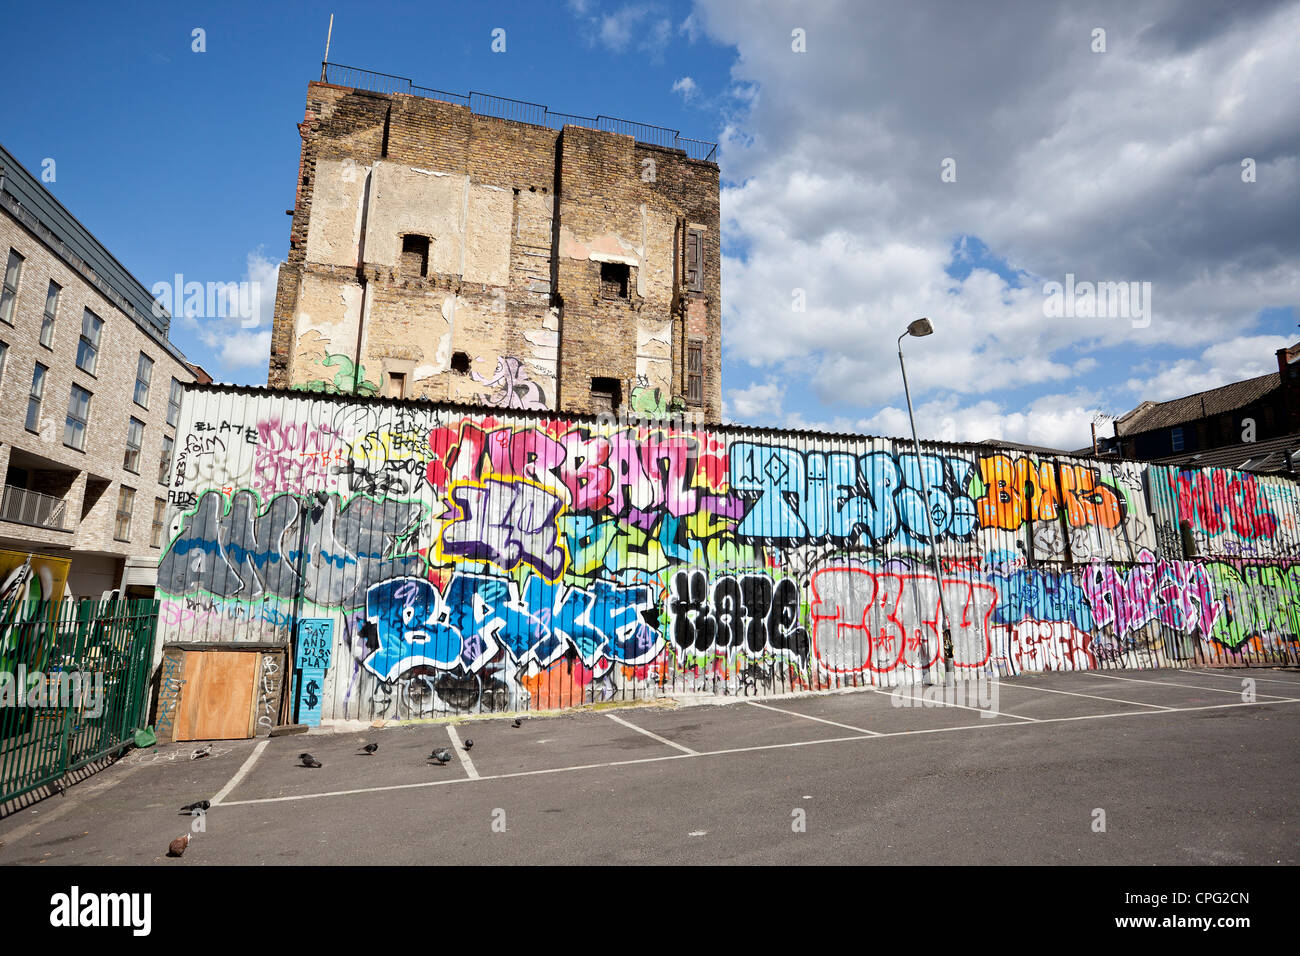 Graffiti on wall, Shoreditch, London, England, UK. Stock Photo